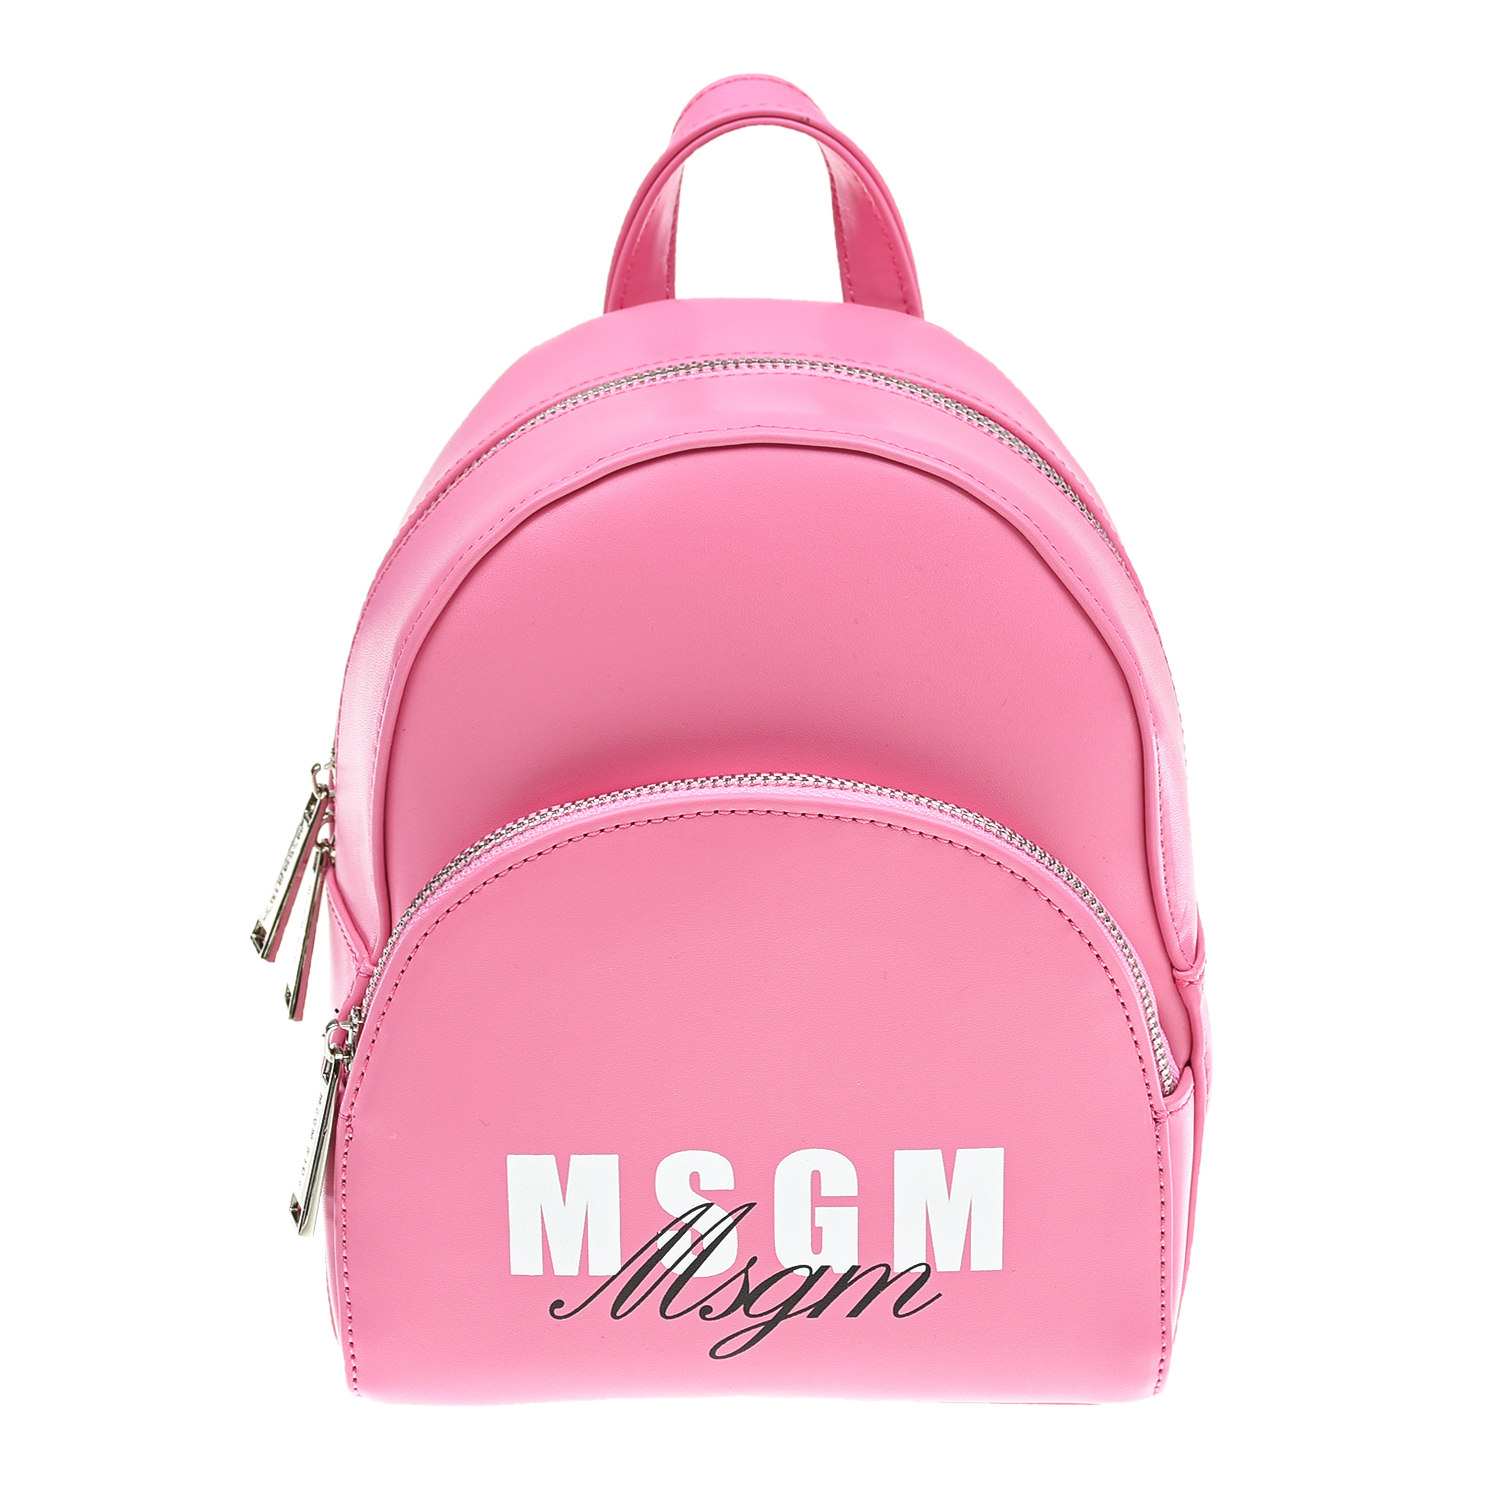 Розовый рюкзак с белым логотипом MSGM детский, размер unica - фото 1